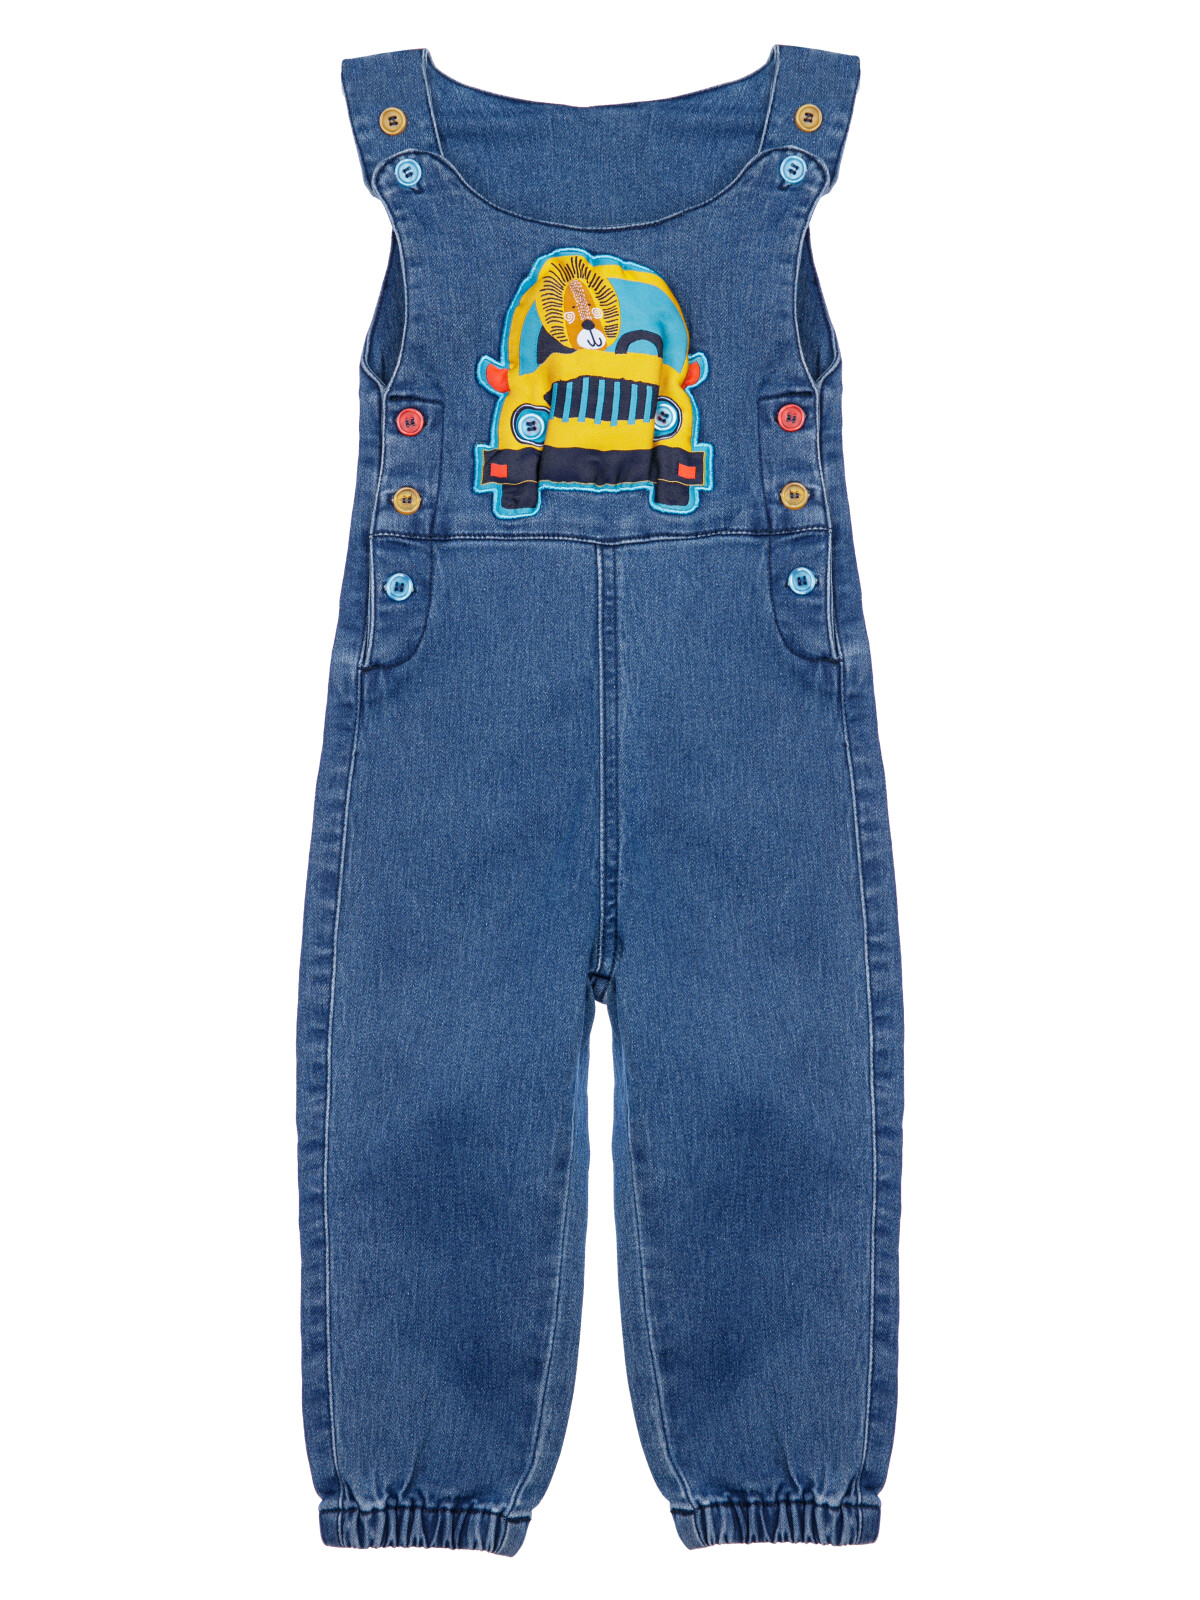 Полукомбинезон детский текстильный джинсовый для мальчиков PlayToday, голубой, 86